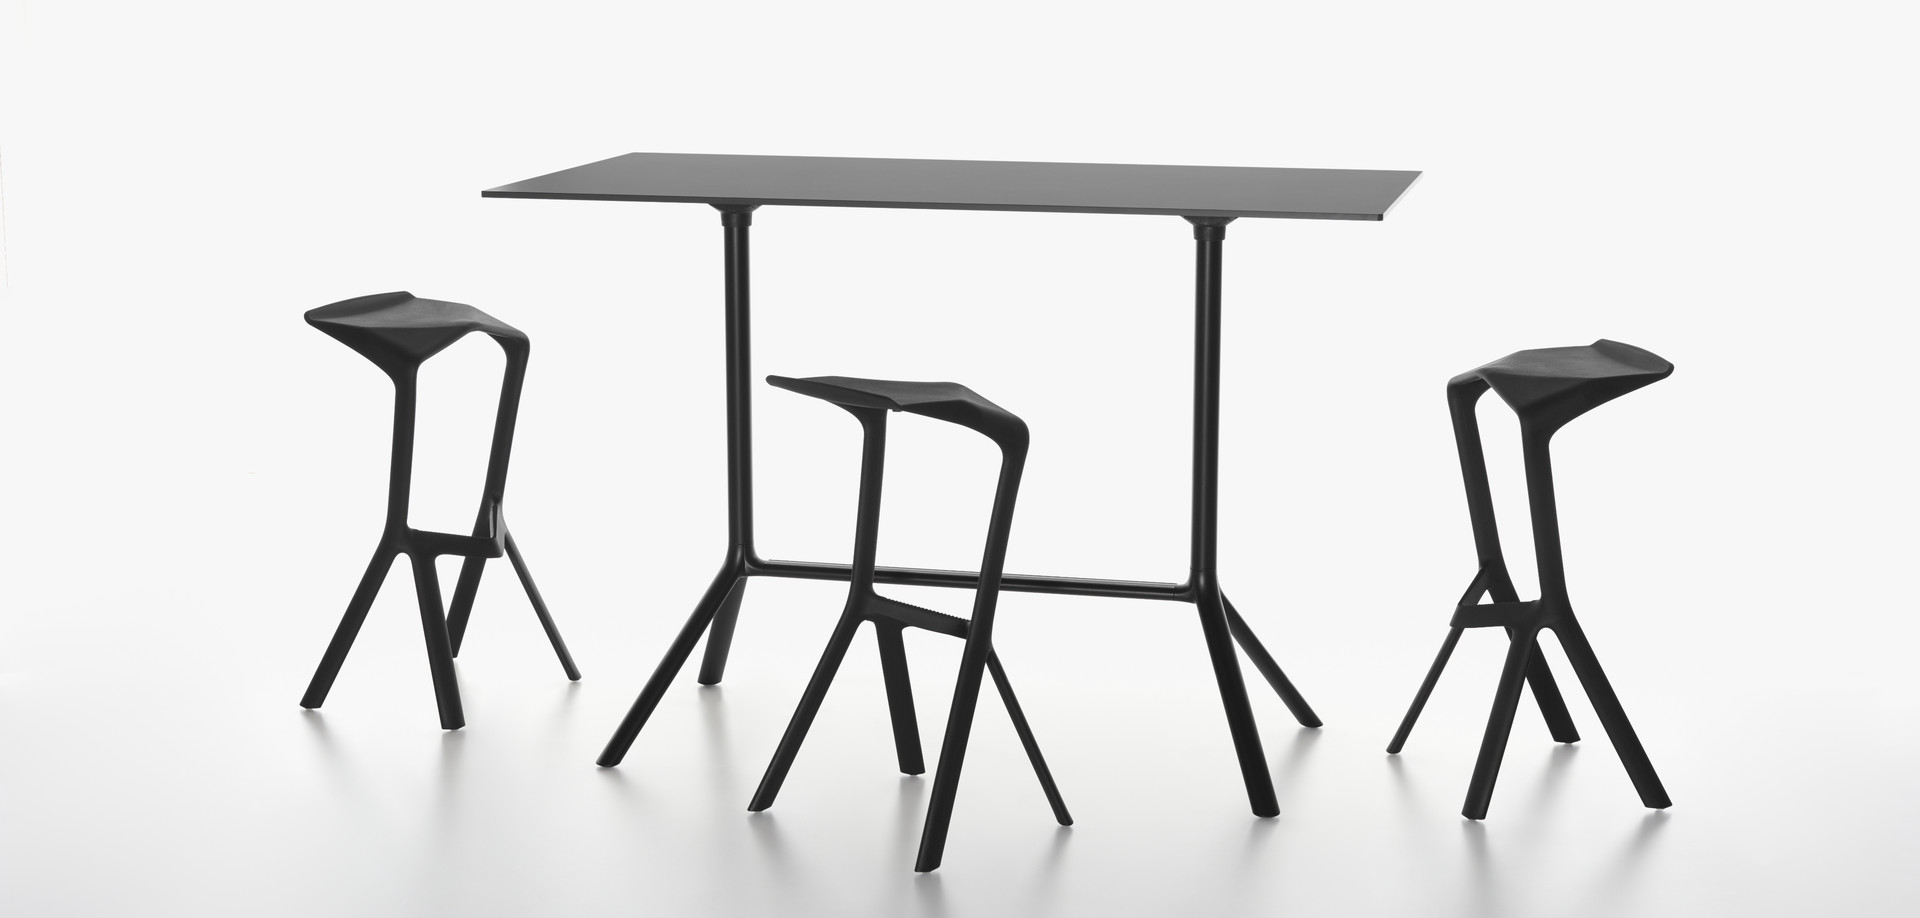 PLANK - MIURA stool, black and MIURA table, black